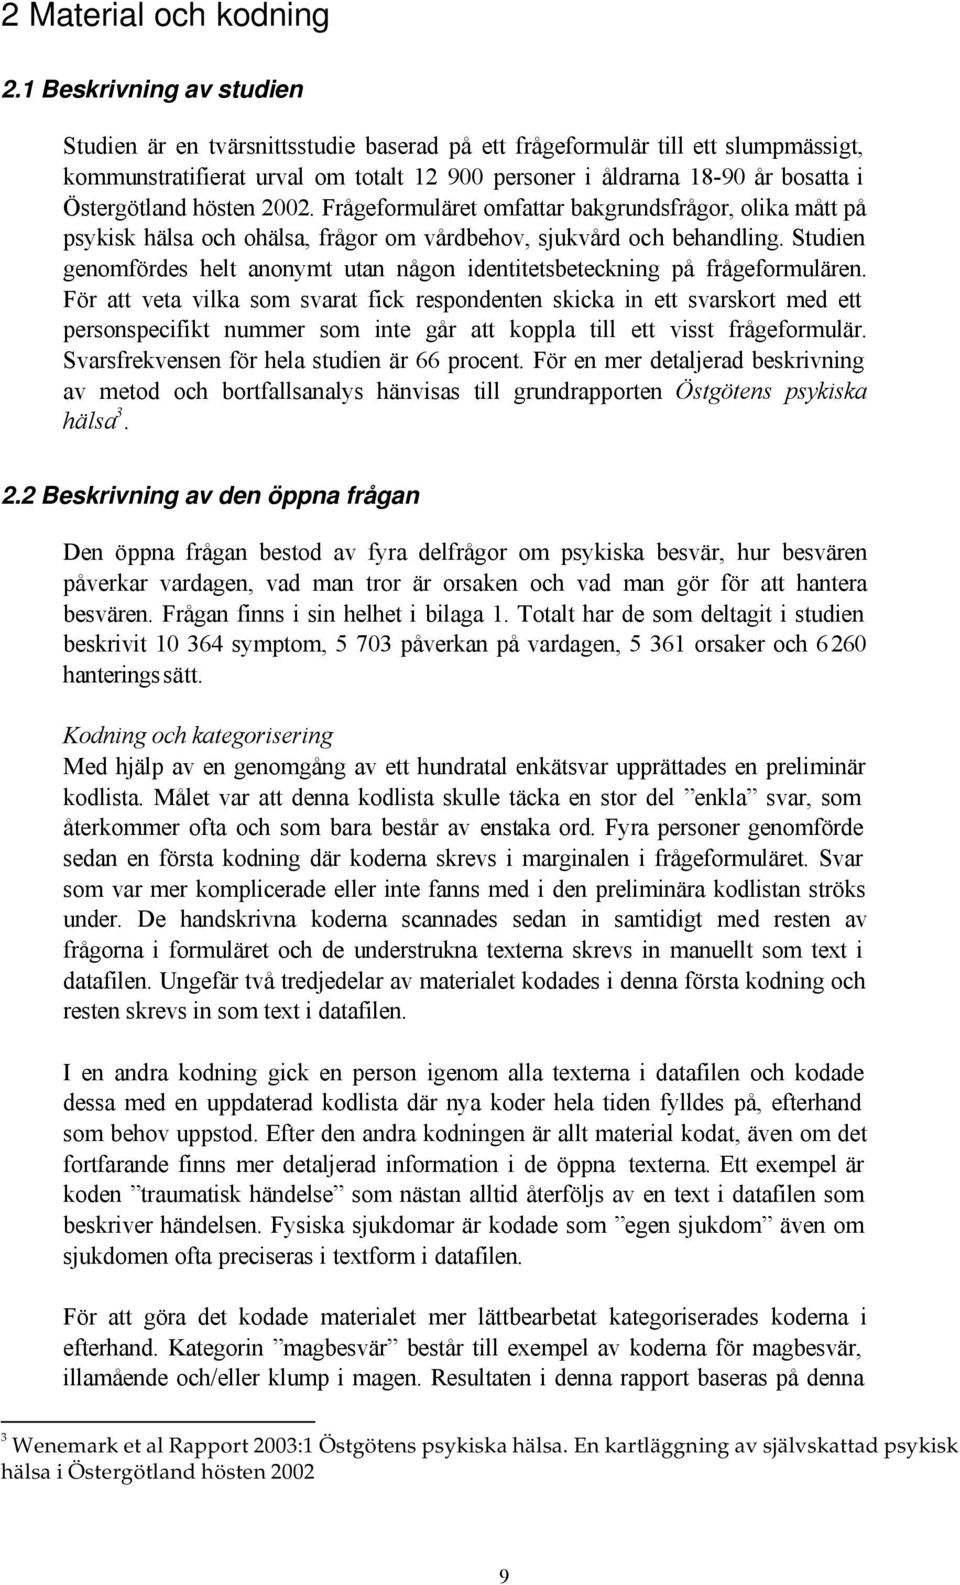 Östergötland hösten 2002. Frågeformuläret omfattar bakgrundsfrågor, olika mått på psykisk hälsa och ohälsa, frågor om vårdbehov, sjukvård och behandling.